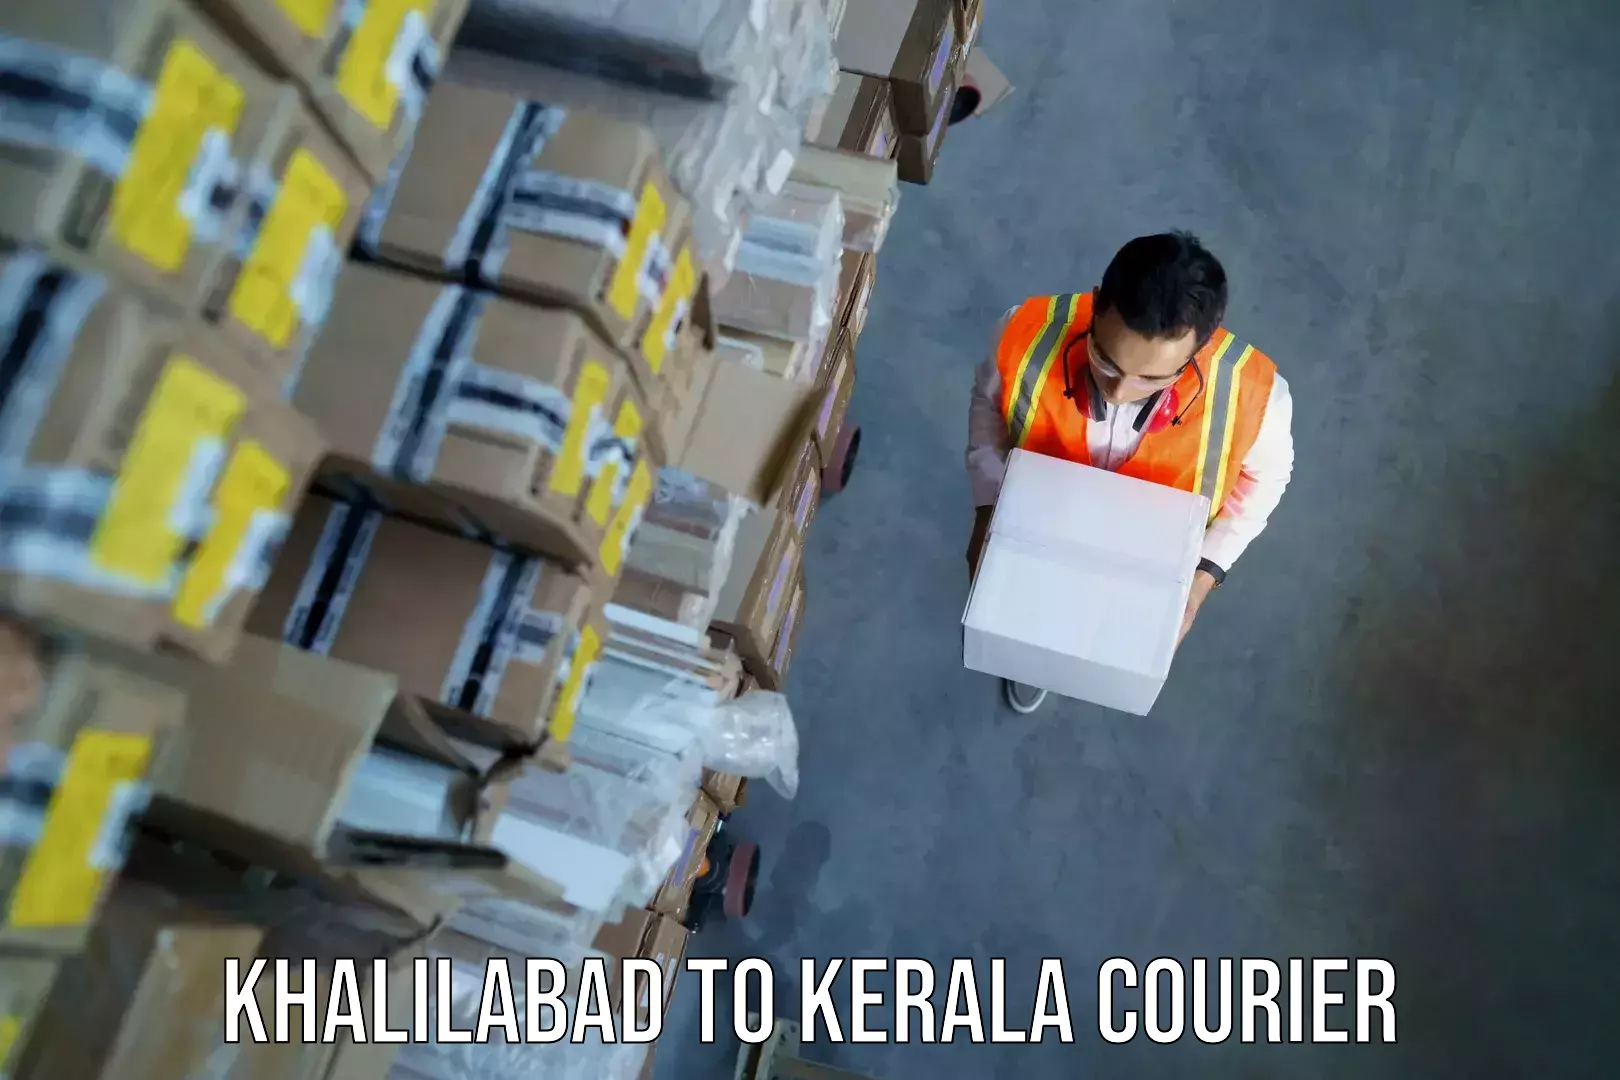 Baggage courier insights Khalilabad to Kerala